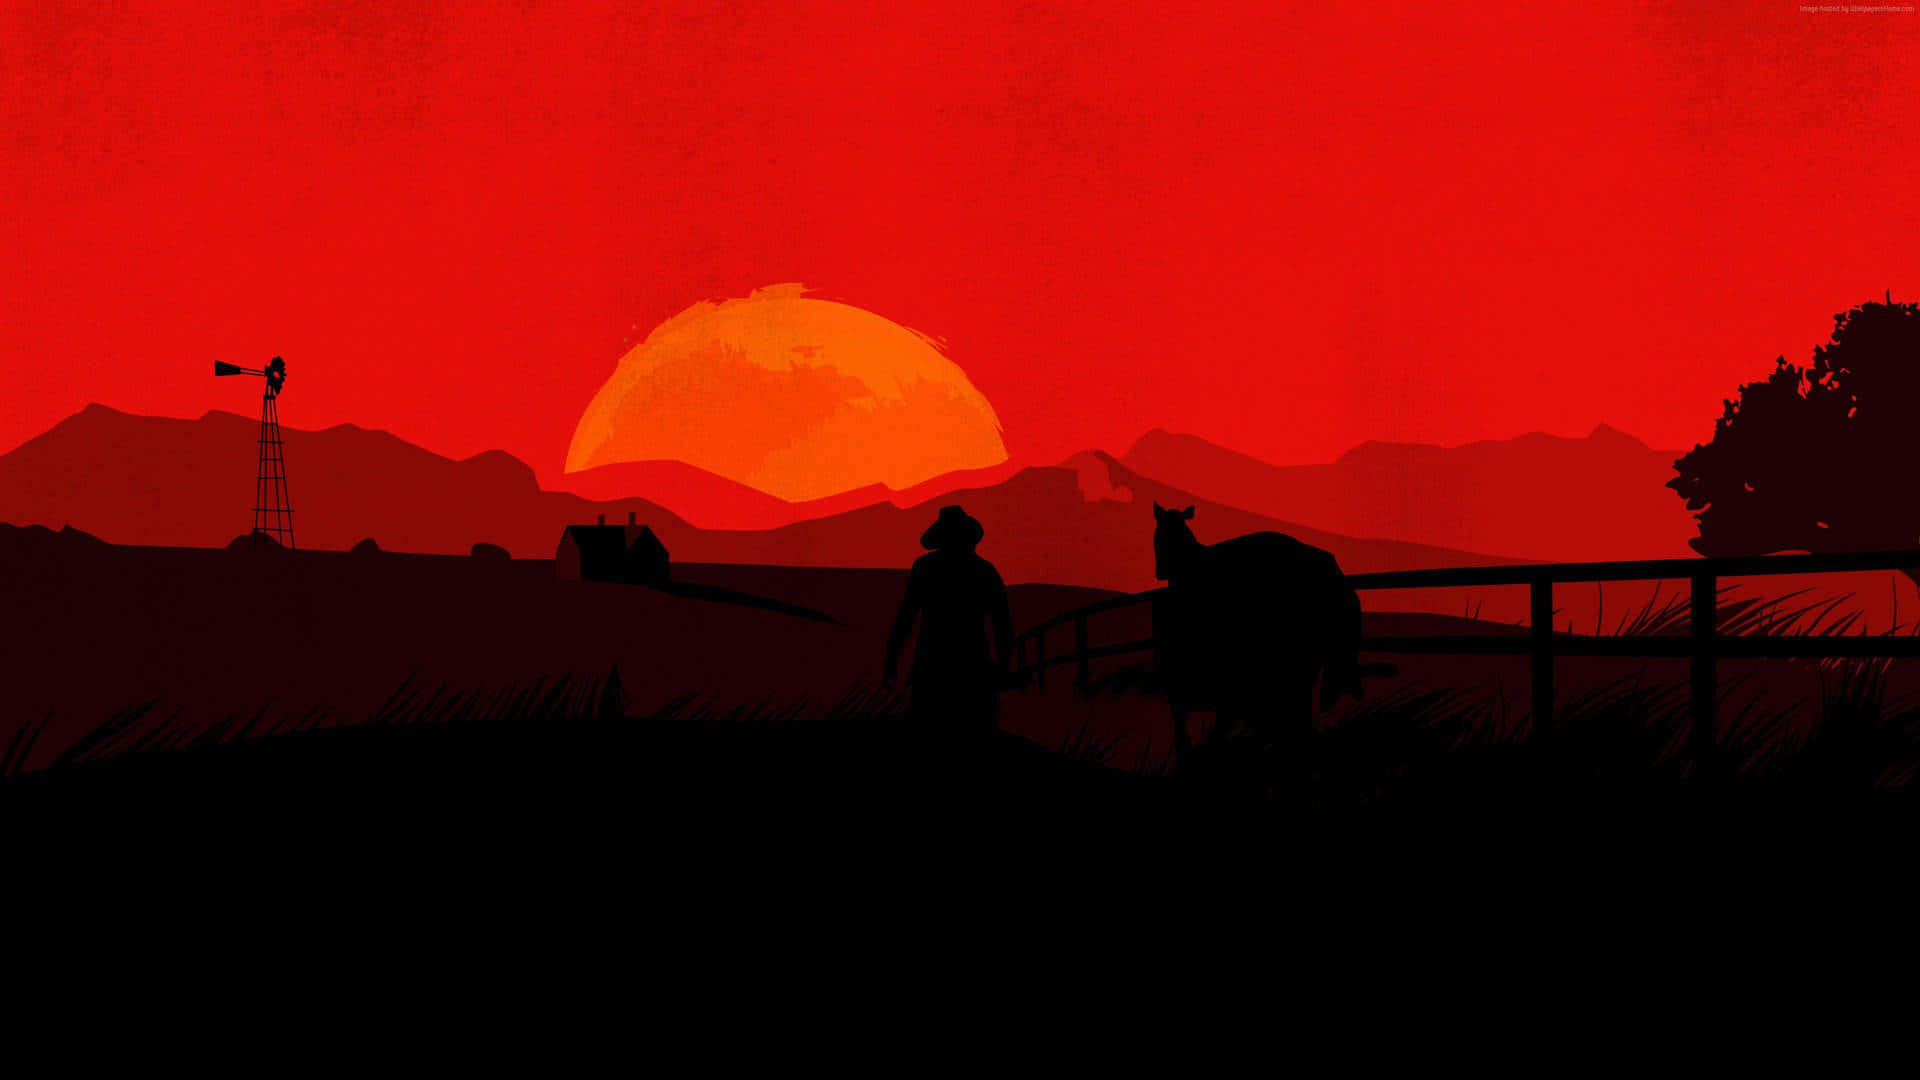 Migliorsfondo Di Red Dead Redemption 2 Con Uomo E Cavallo Al Tramonto.